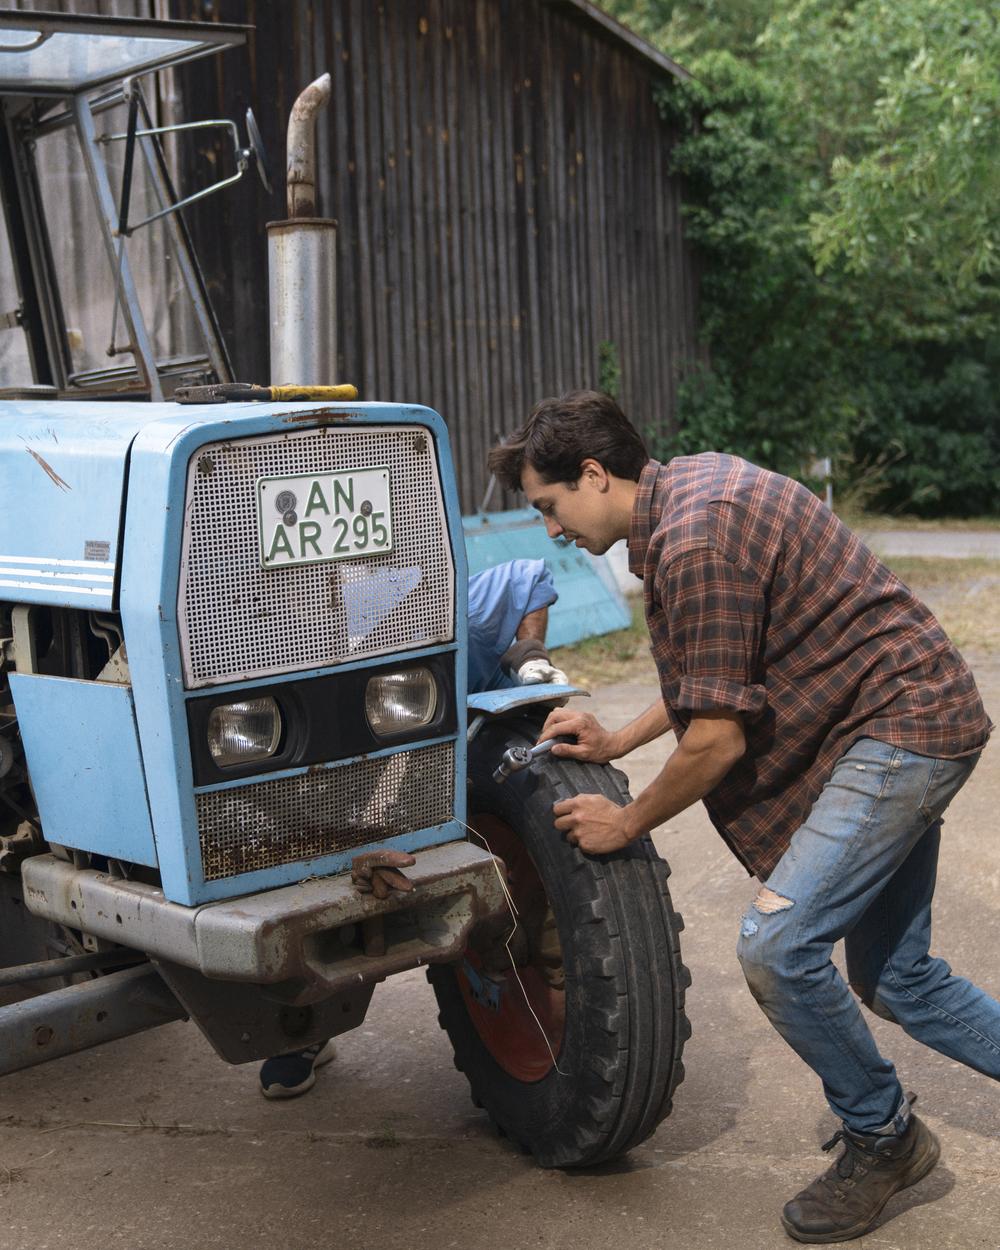 Ein junger Mann mit kariertem Flanellhemd steht vor einem alten, blauen Traktor. Er hat beide Hände auf einen der Vorderreifen gelegt und stemmt sich kraftvoll dagegen.